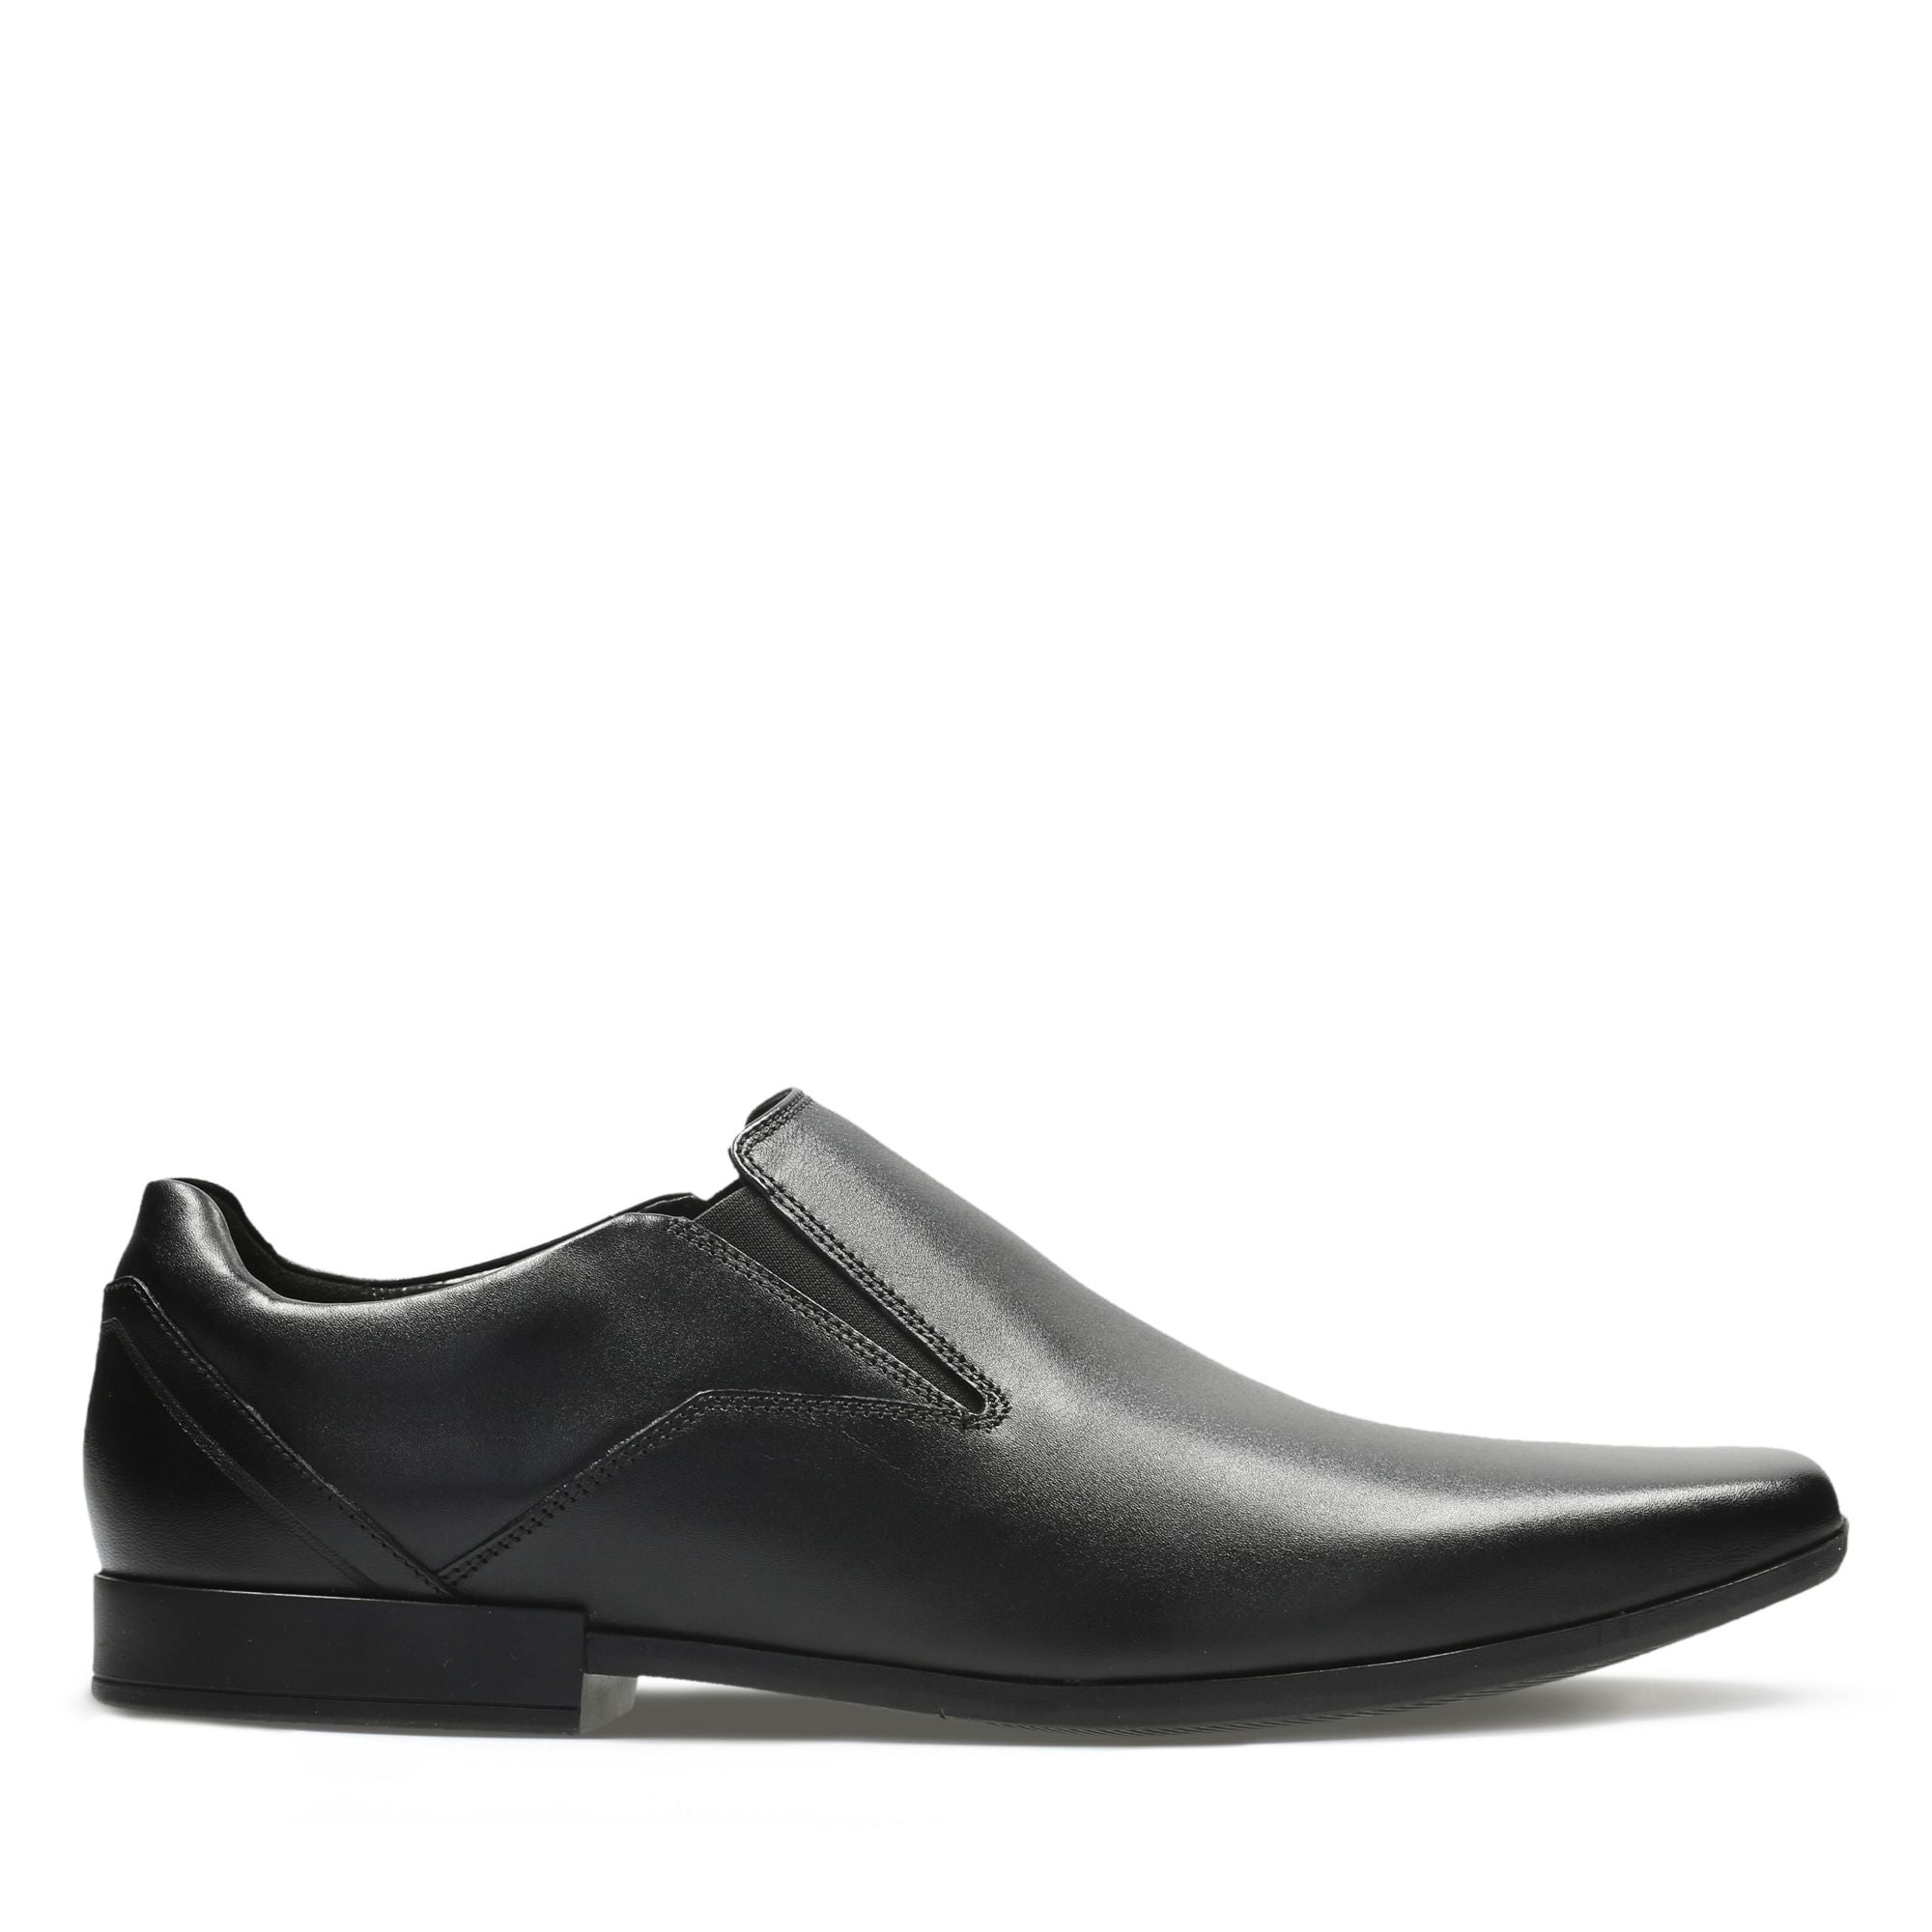 Clarks Glement Slip Black Leather Central Shoes - Limerick City & Kilrush